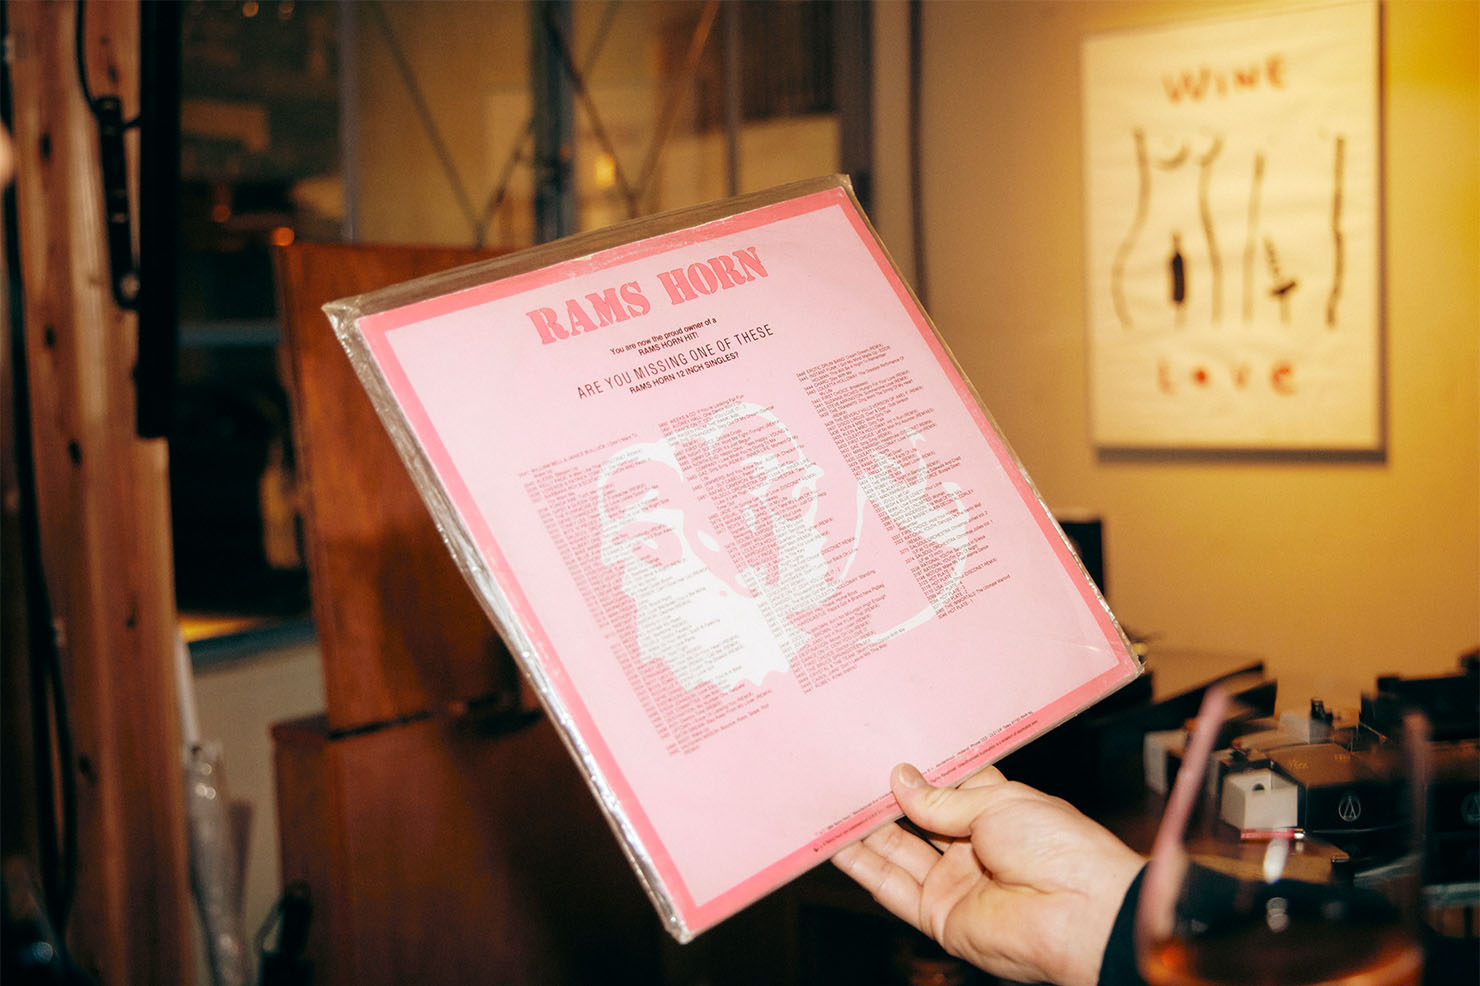 Rams Horn Recordsがヨーロッパのディスコ用に寄せた盤